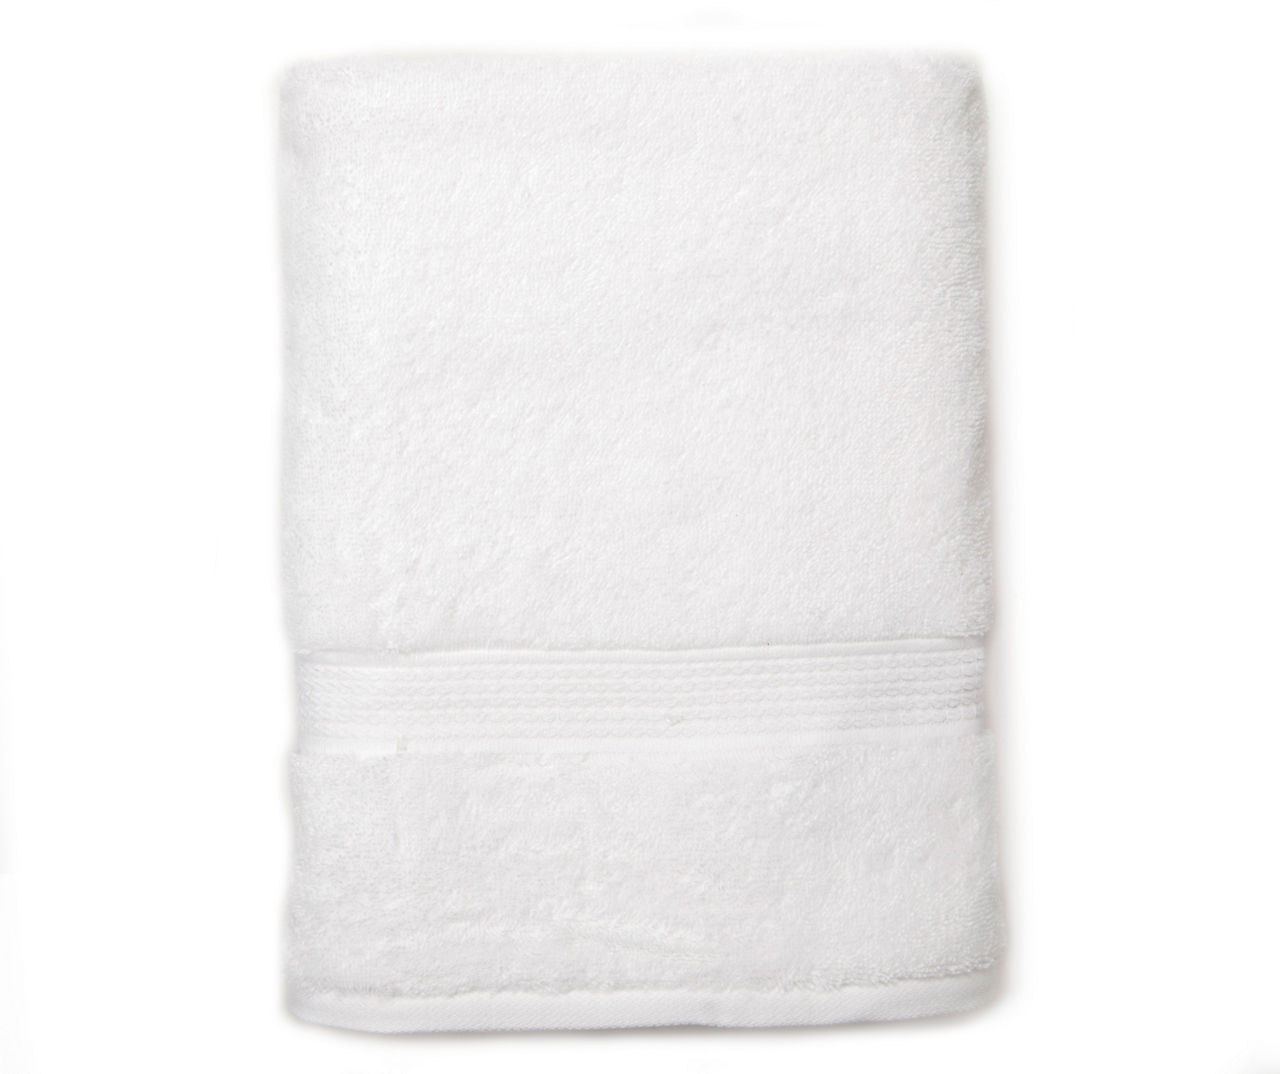 Brilliant White Bath Towel